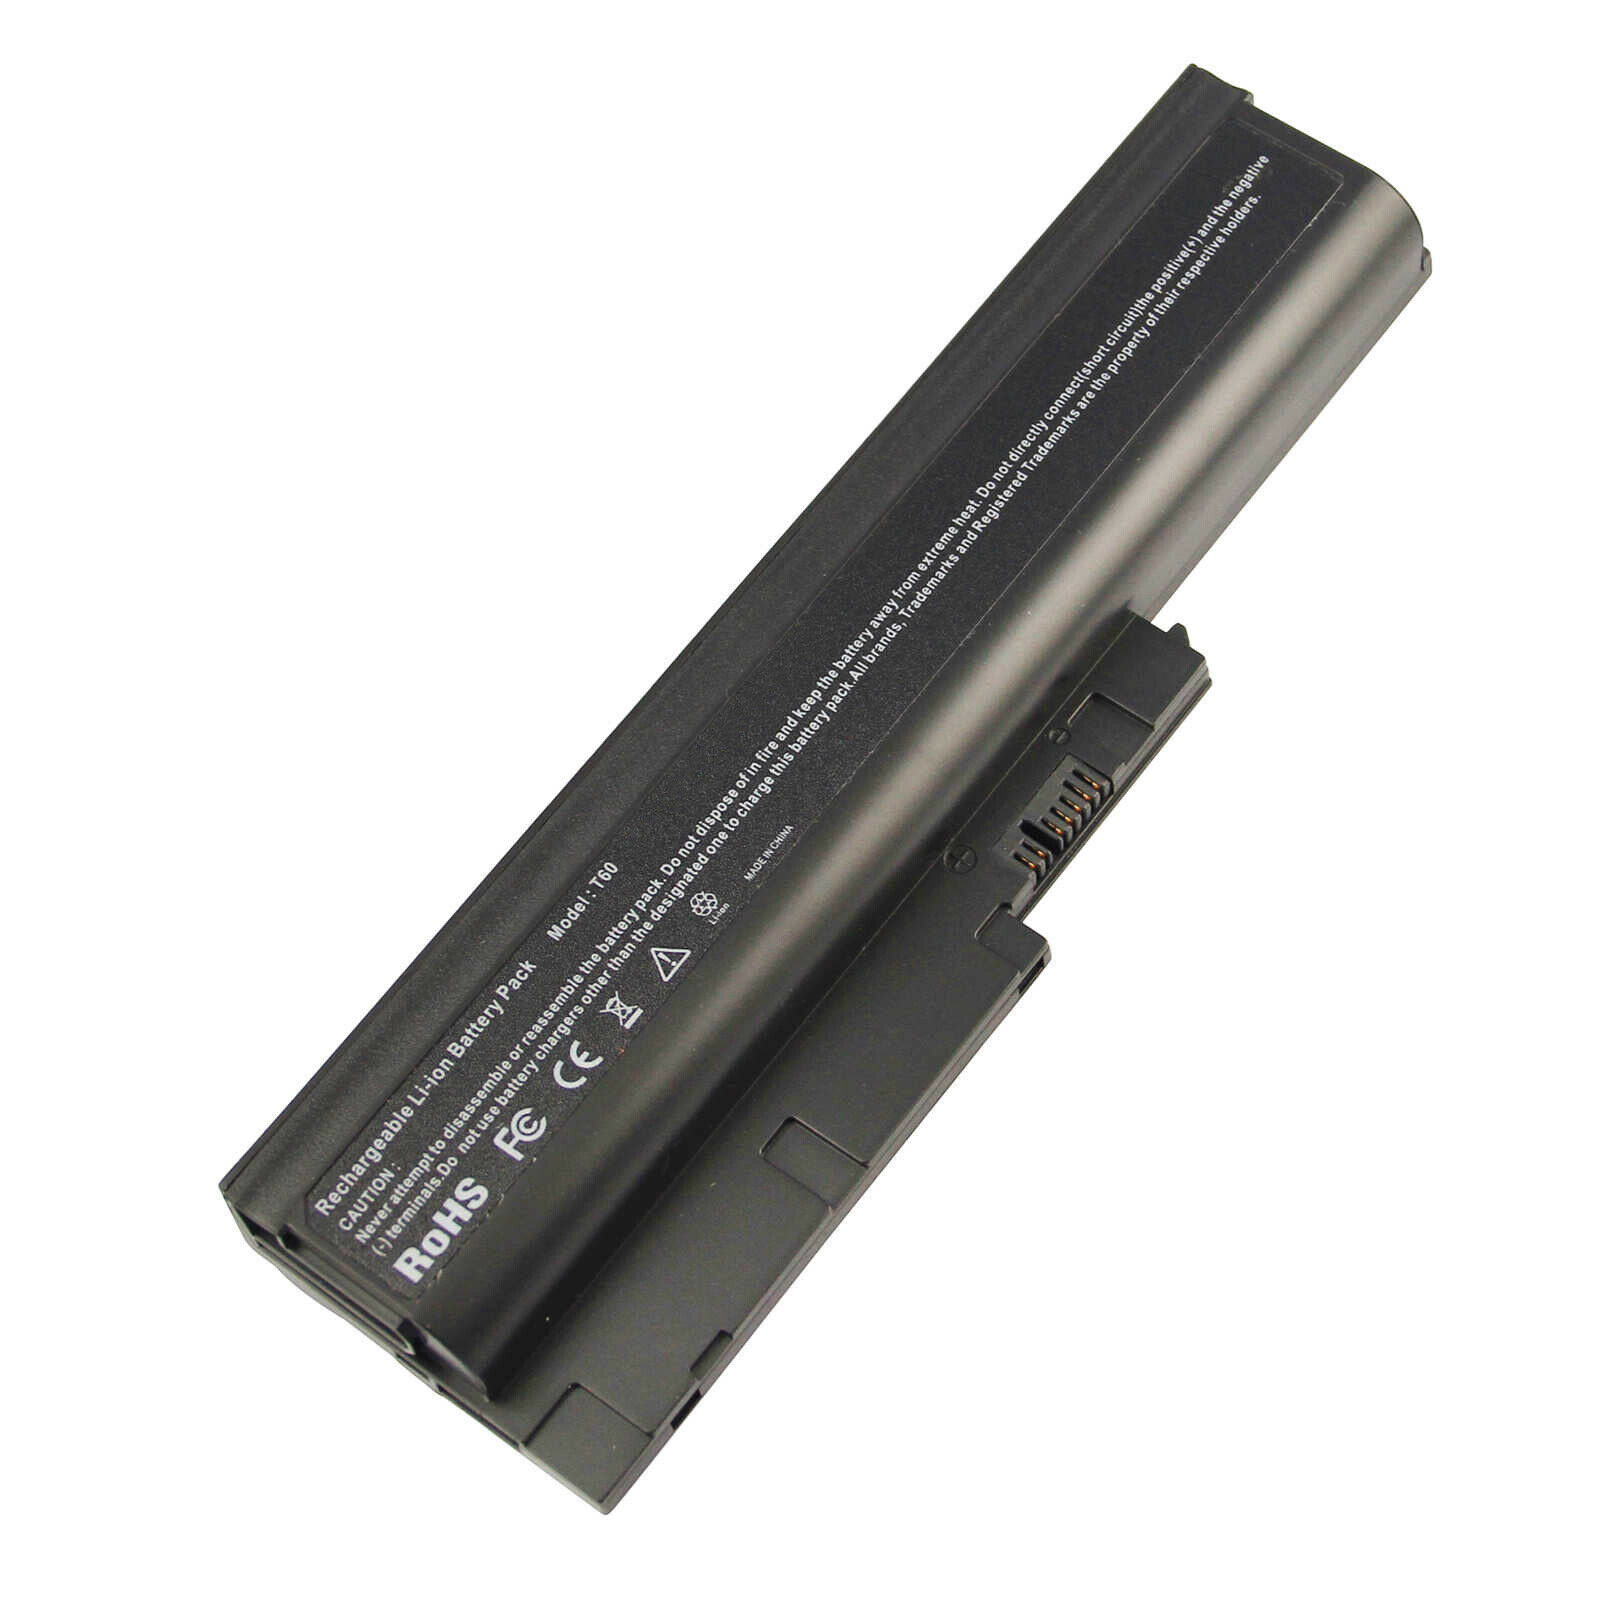 9Cell Battery for IBM Lenovo Thinkpad T60 T60p T61 R60 R61 R61e R500 T500 SL500